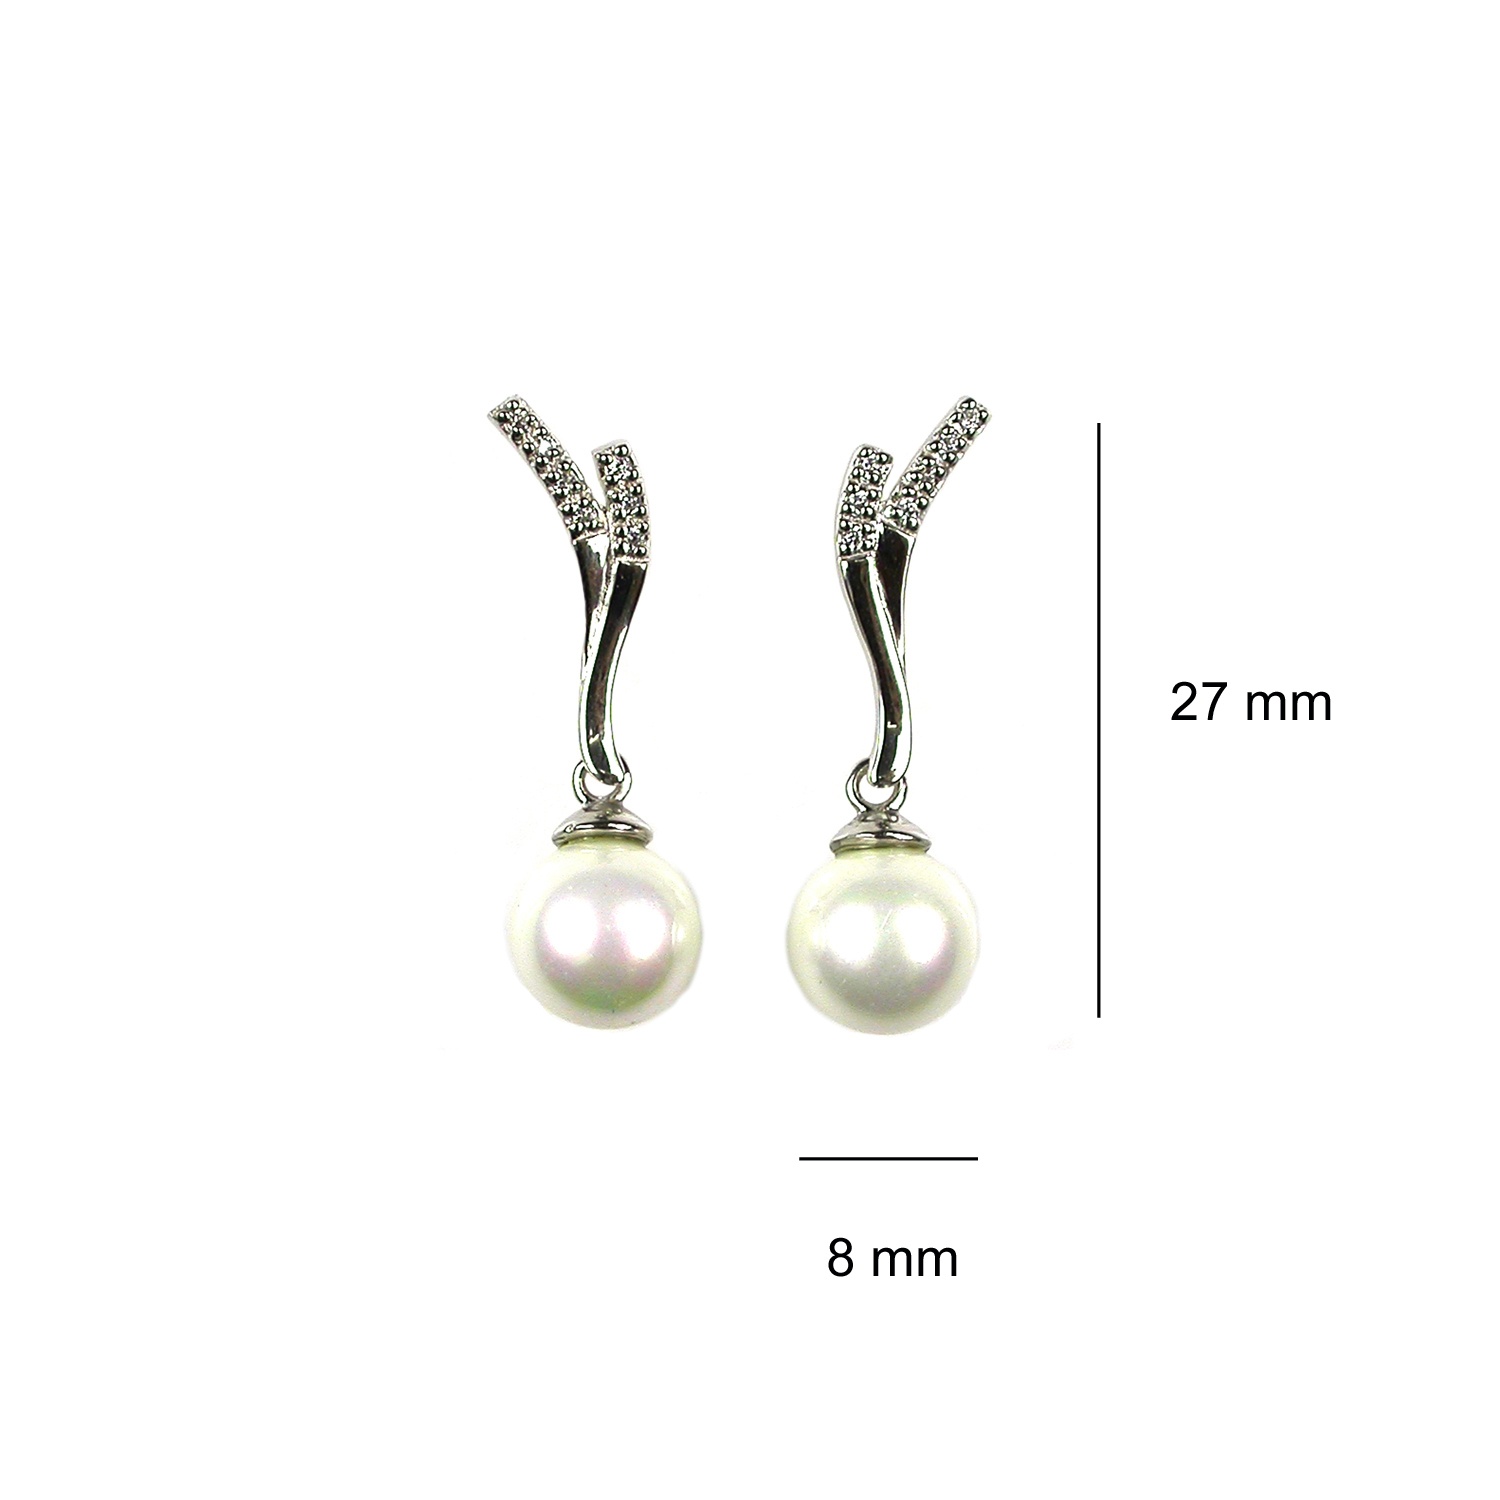 Silver Pearl earrings 3